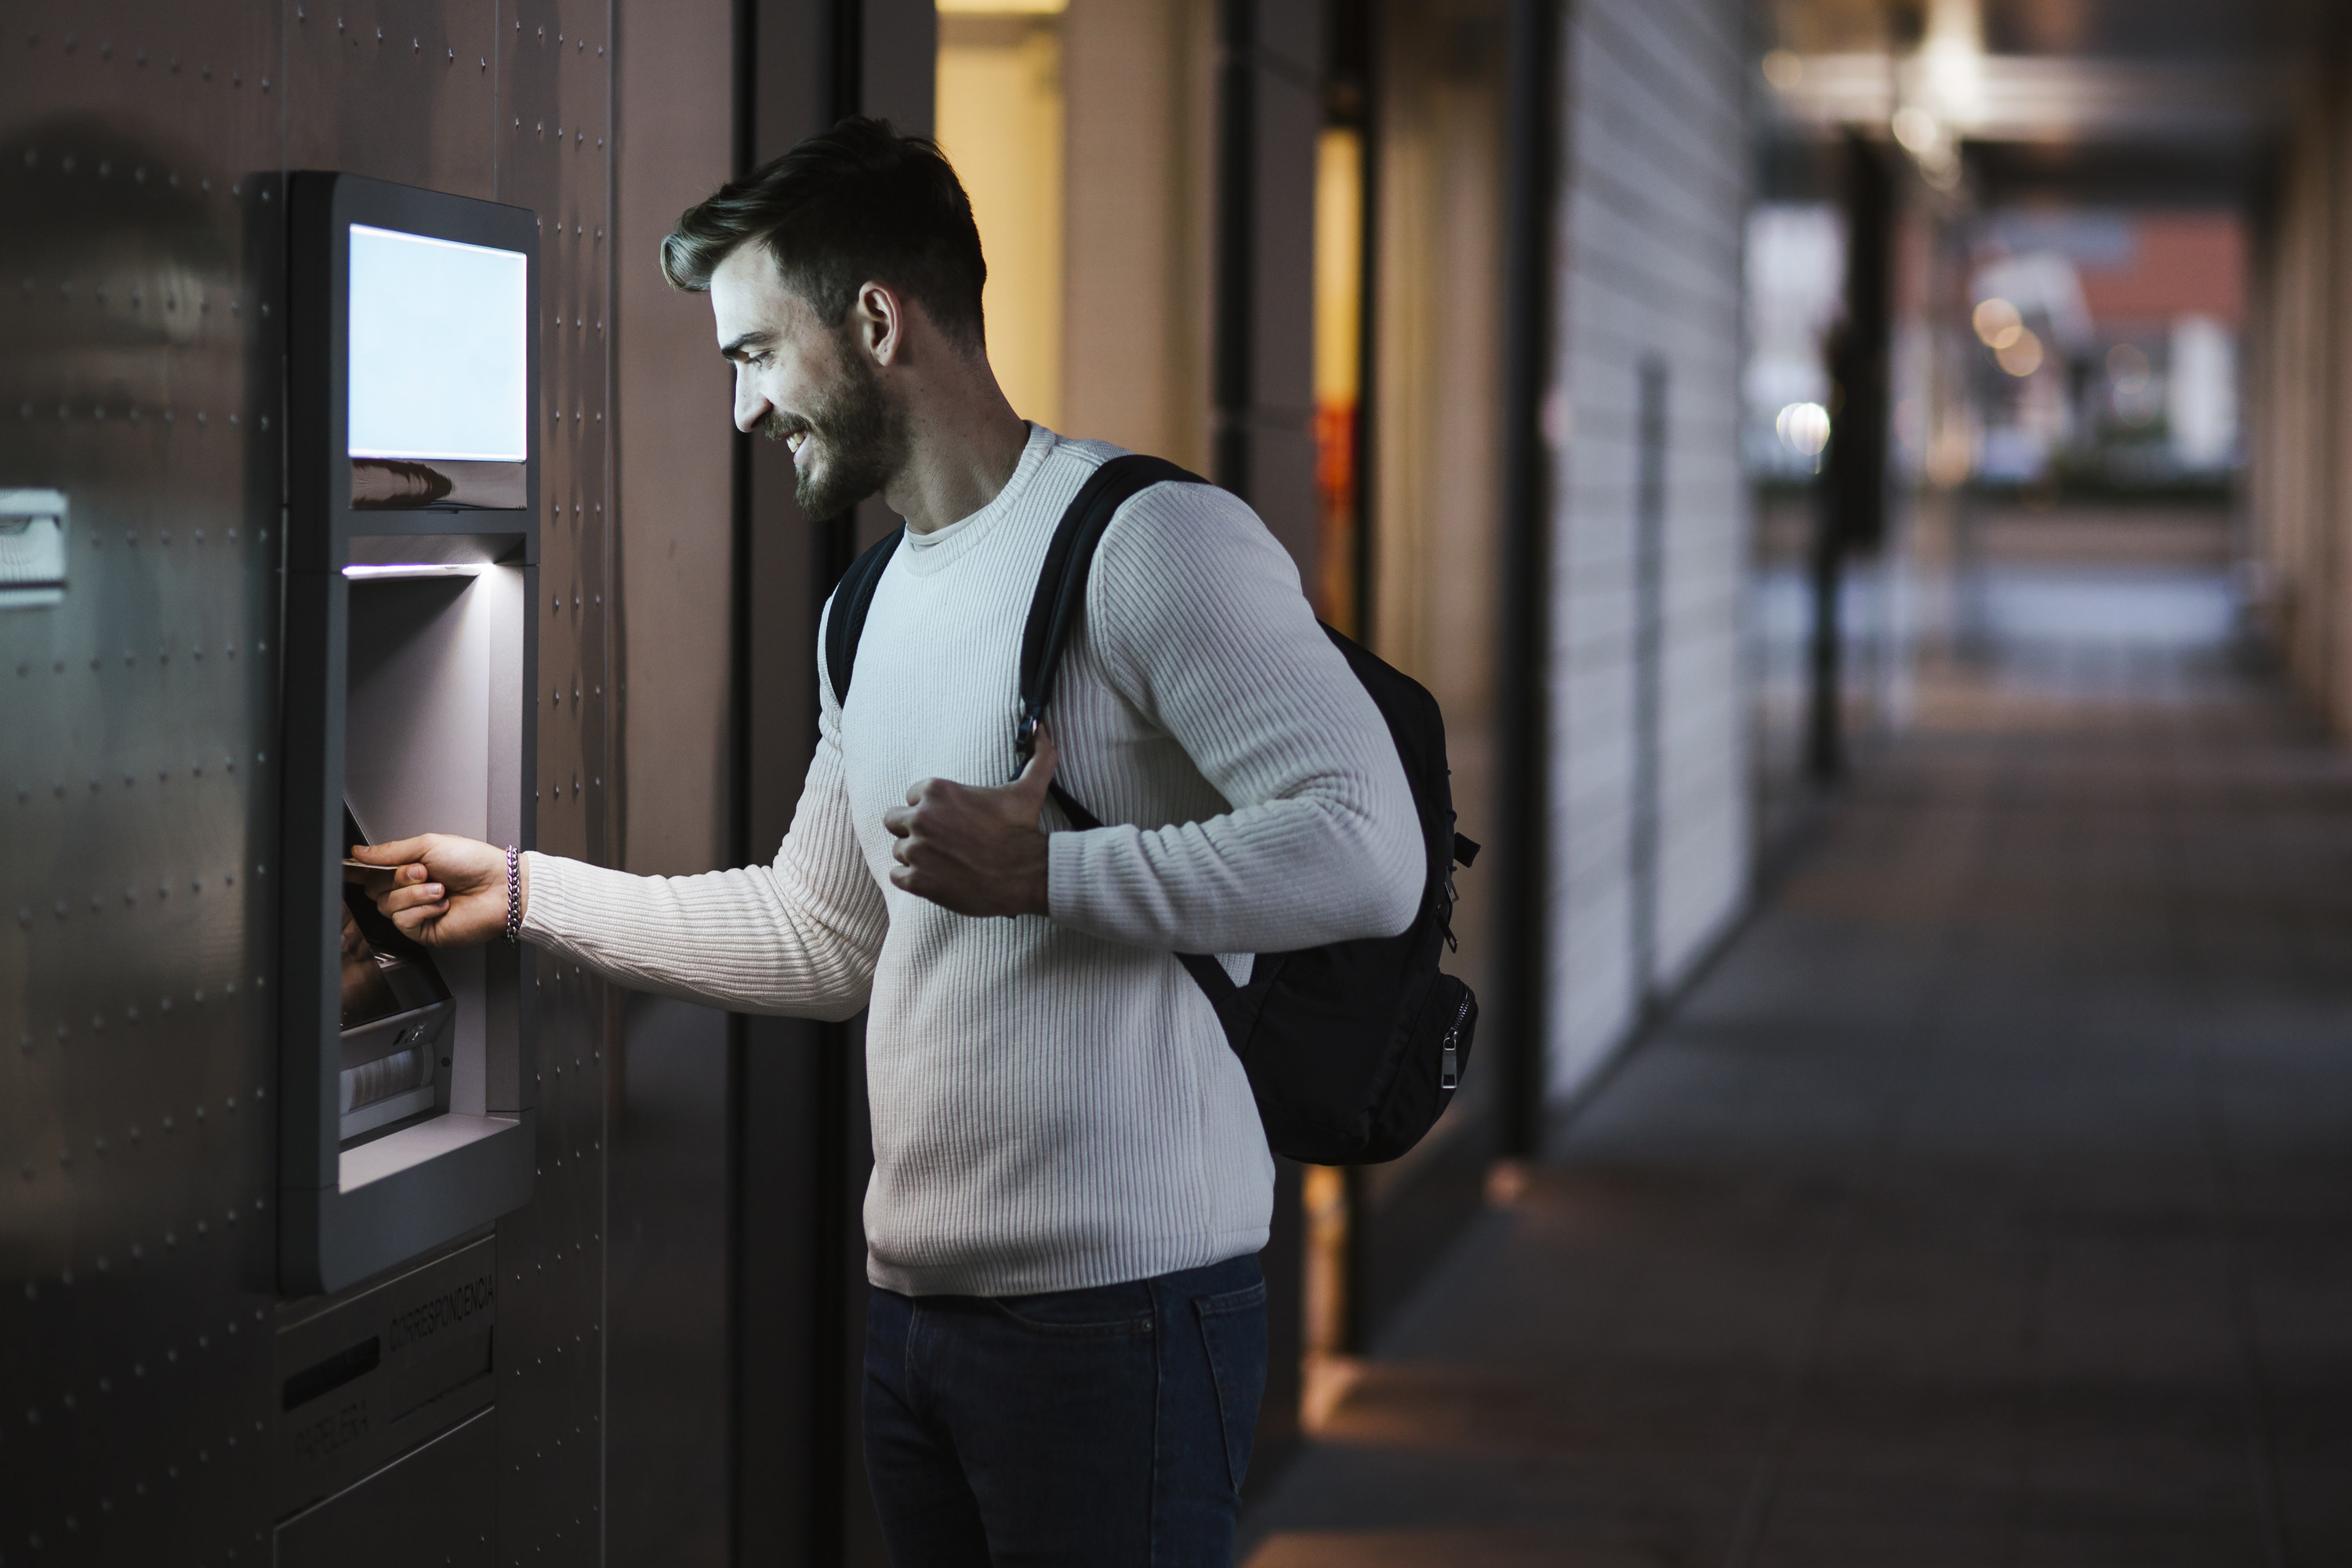 Man using an ATM